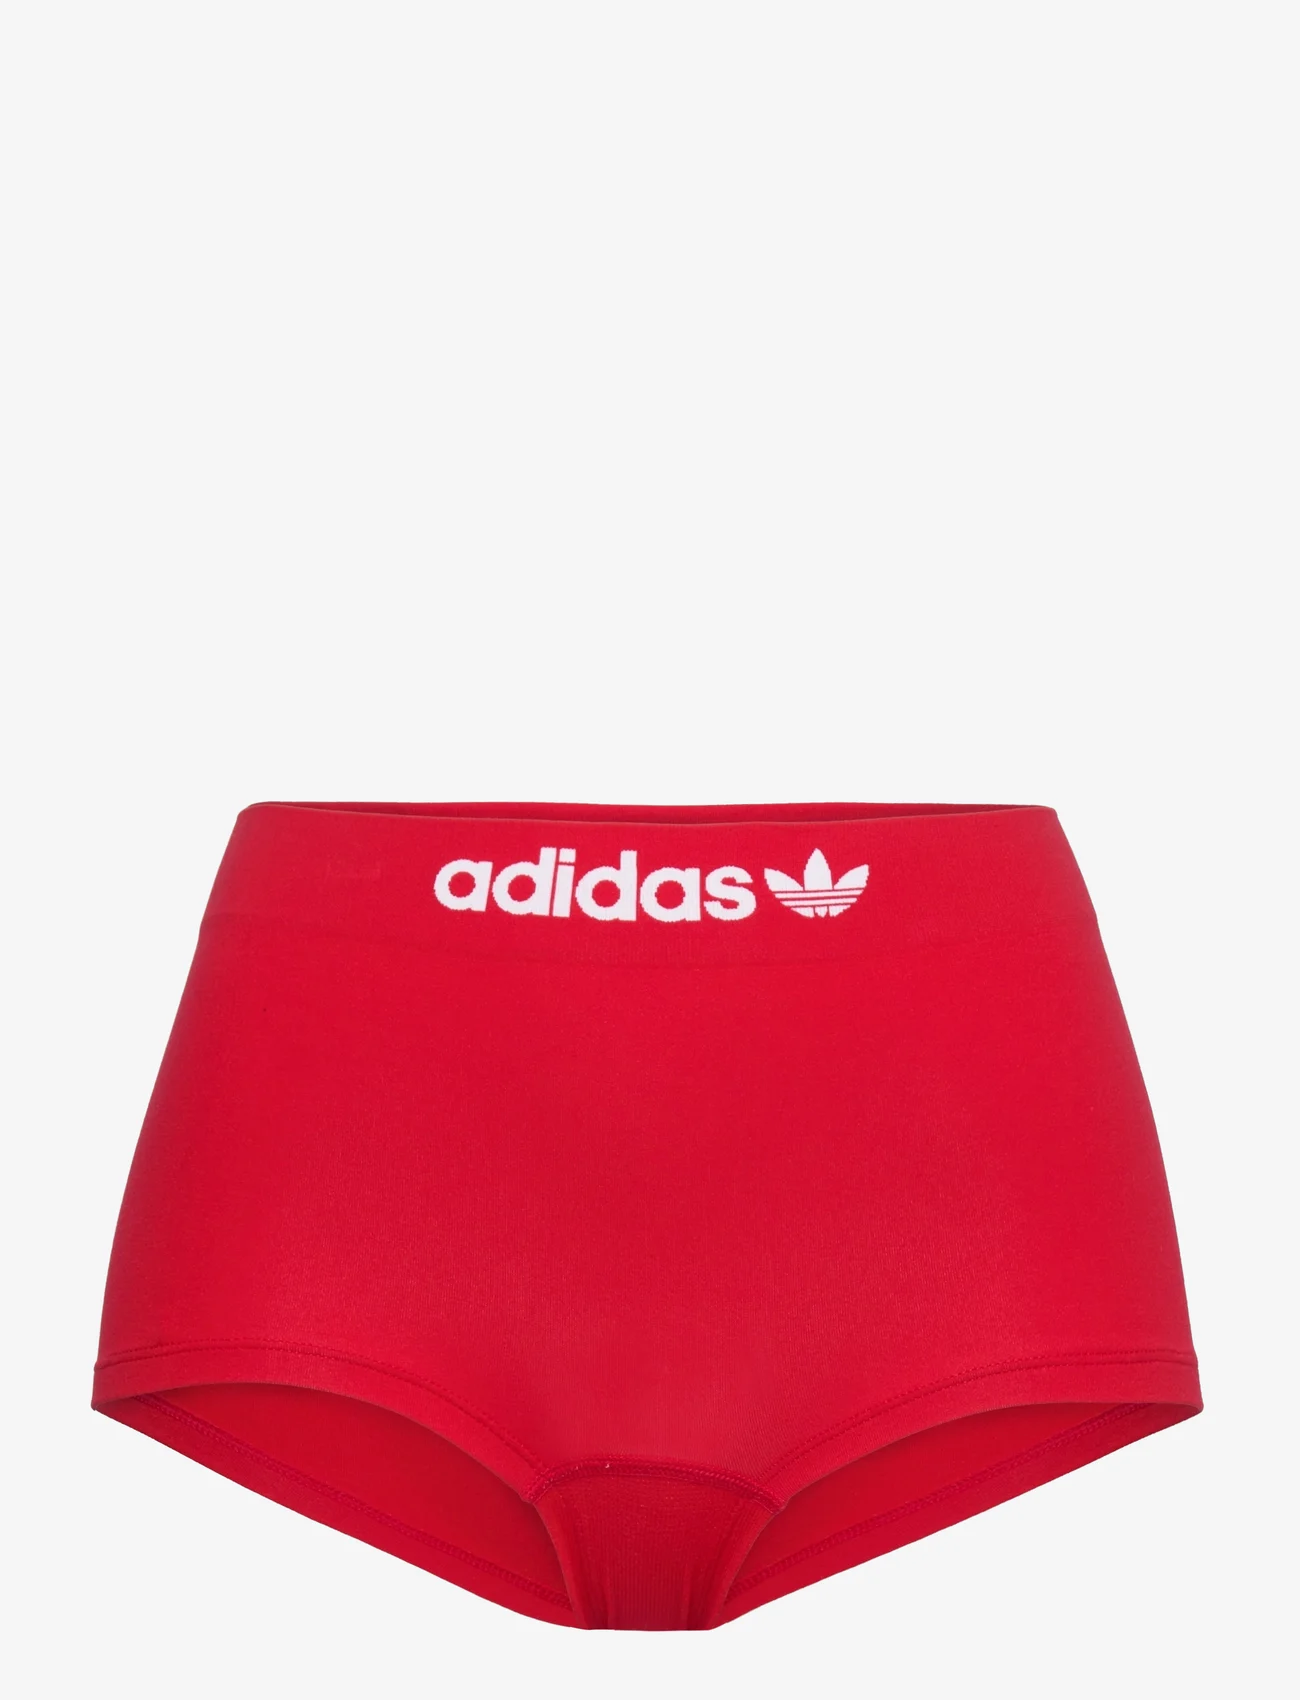 adidas Originals Underwear - Short - laveste priser - red - 0